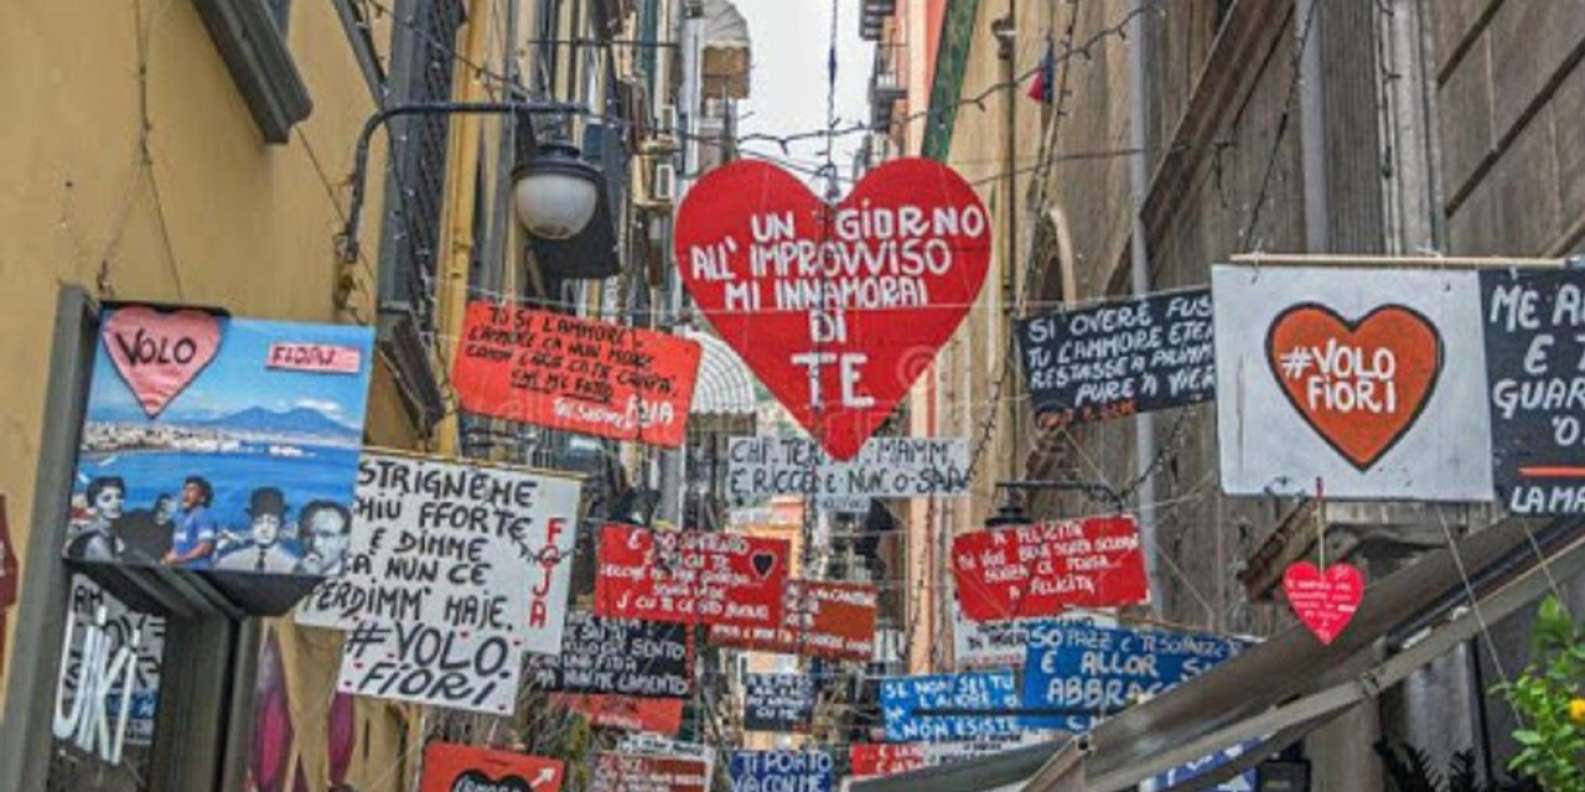 Napoli: tur til det spanske kvarter det lokale marked |